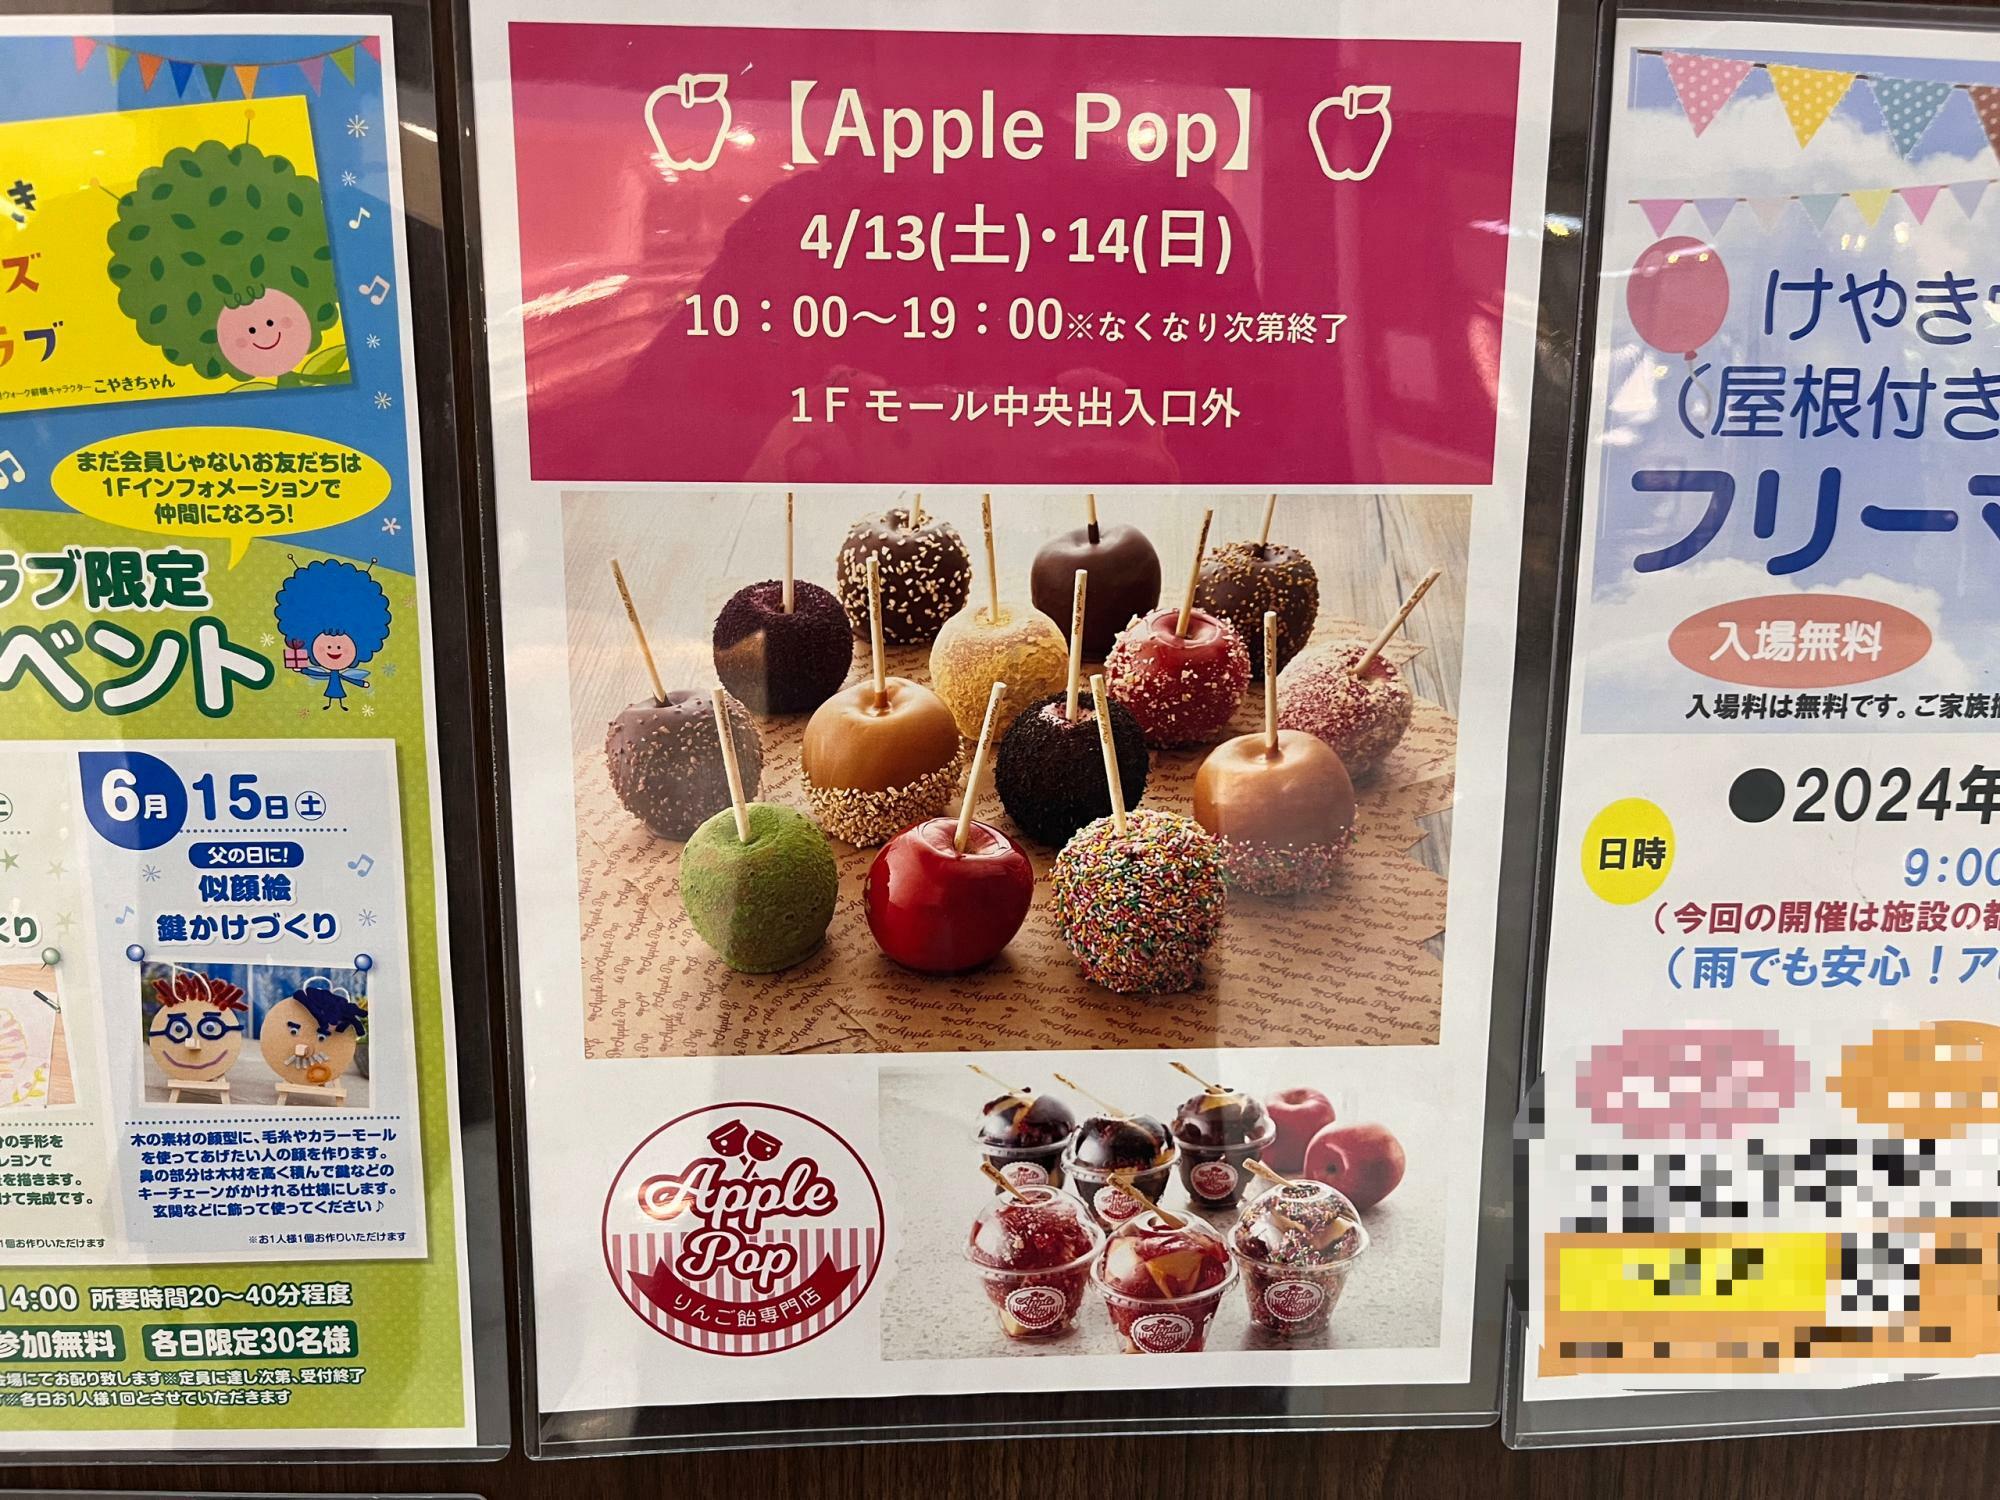 「Apple Pop」出店告知のポスター